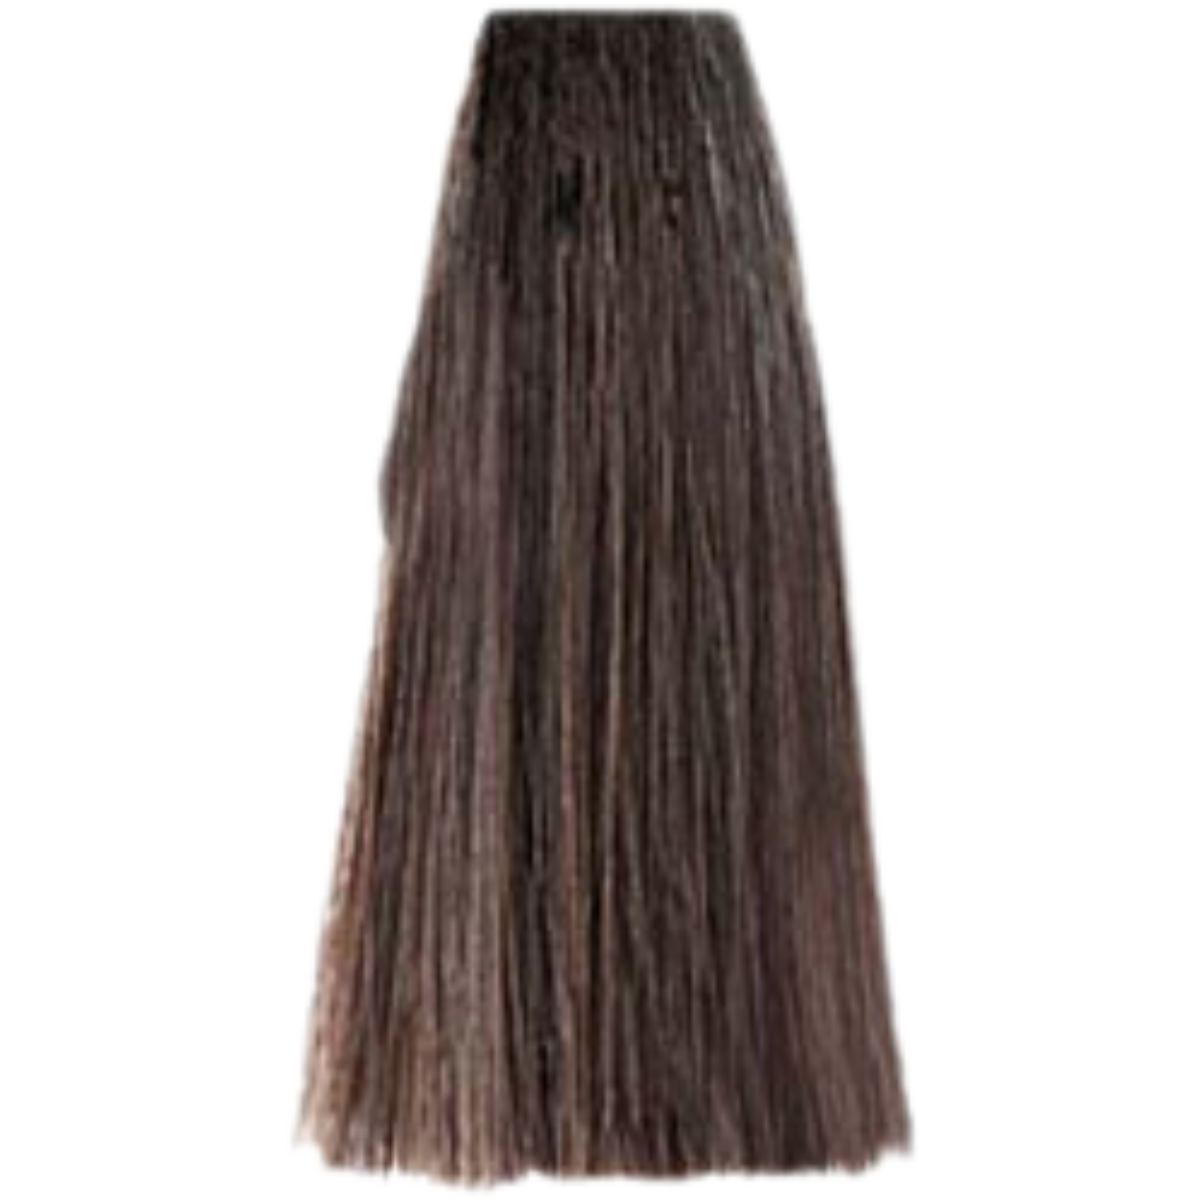 צבע שיער בסיס NATURALS LIGHT BROWN 5.0 פארמויטה FarmaVita צבע לשיער 100 גרם